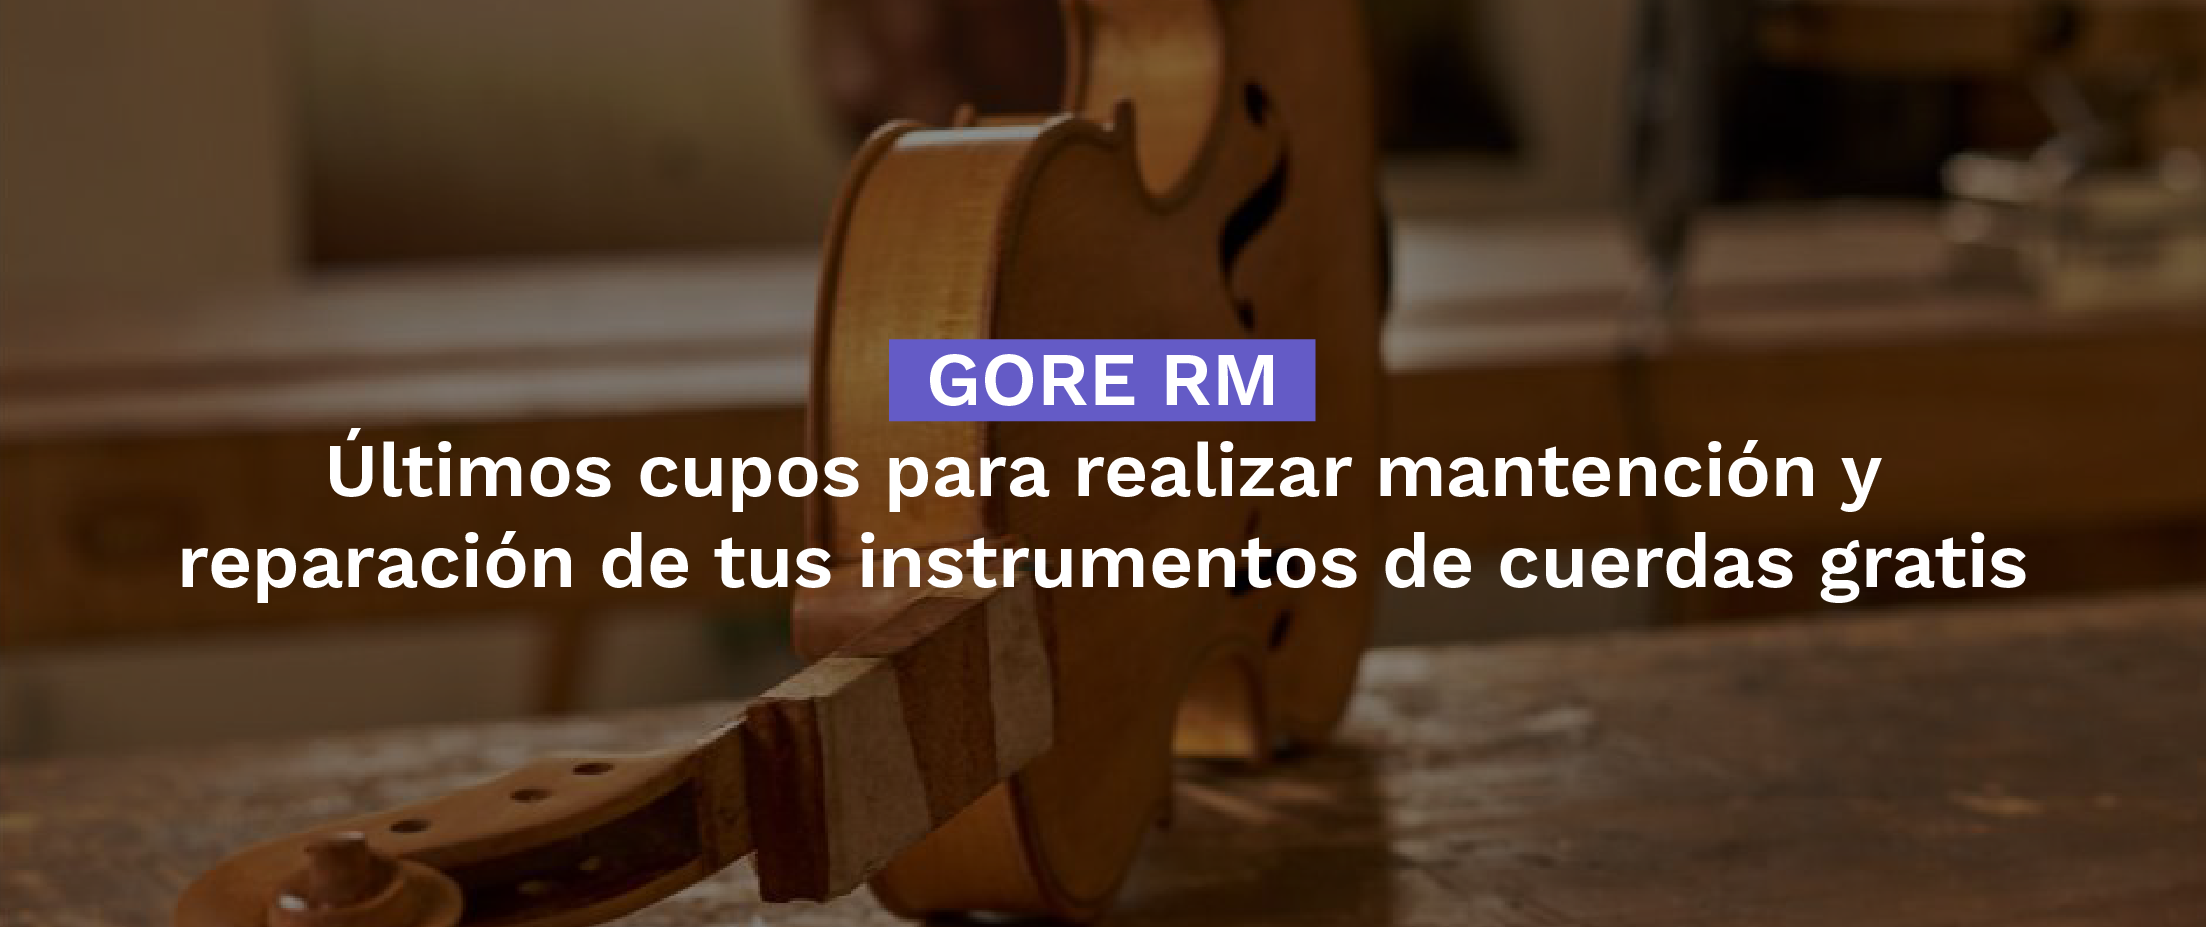 GORE RM - Últimos cupos para realizar mantención y reparación de tus instrumentos de cuerdas gratis